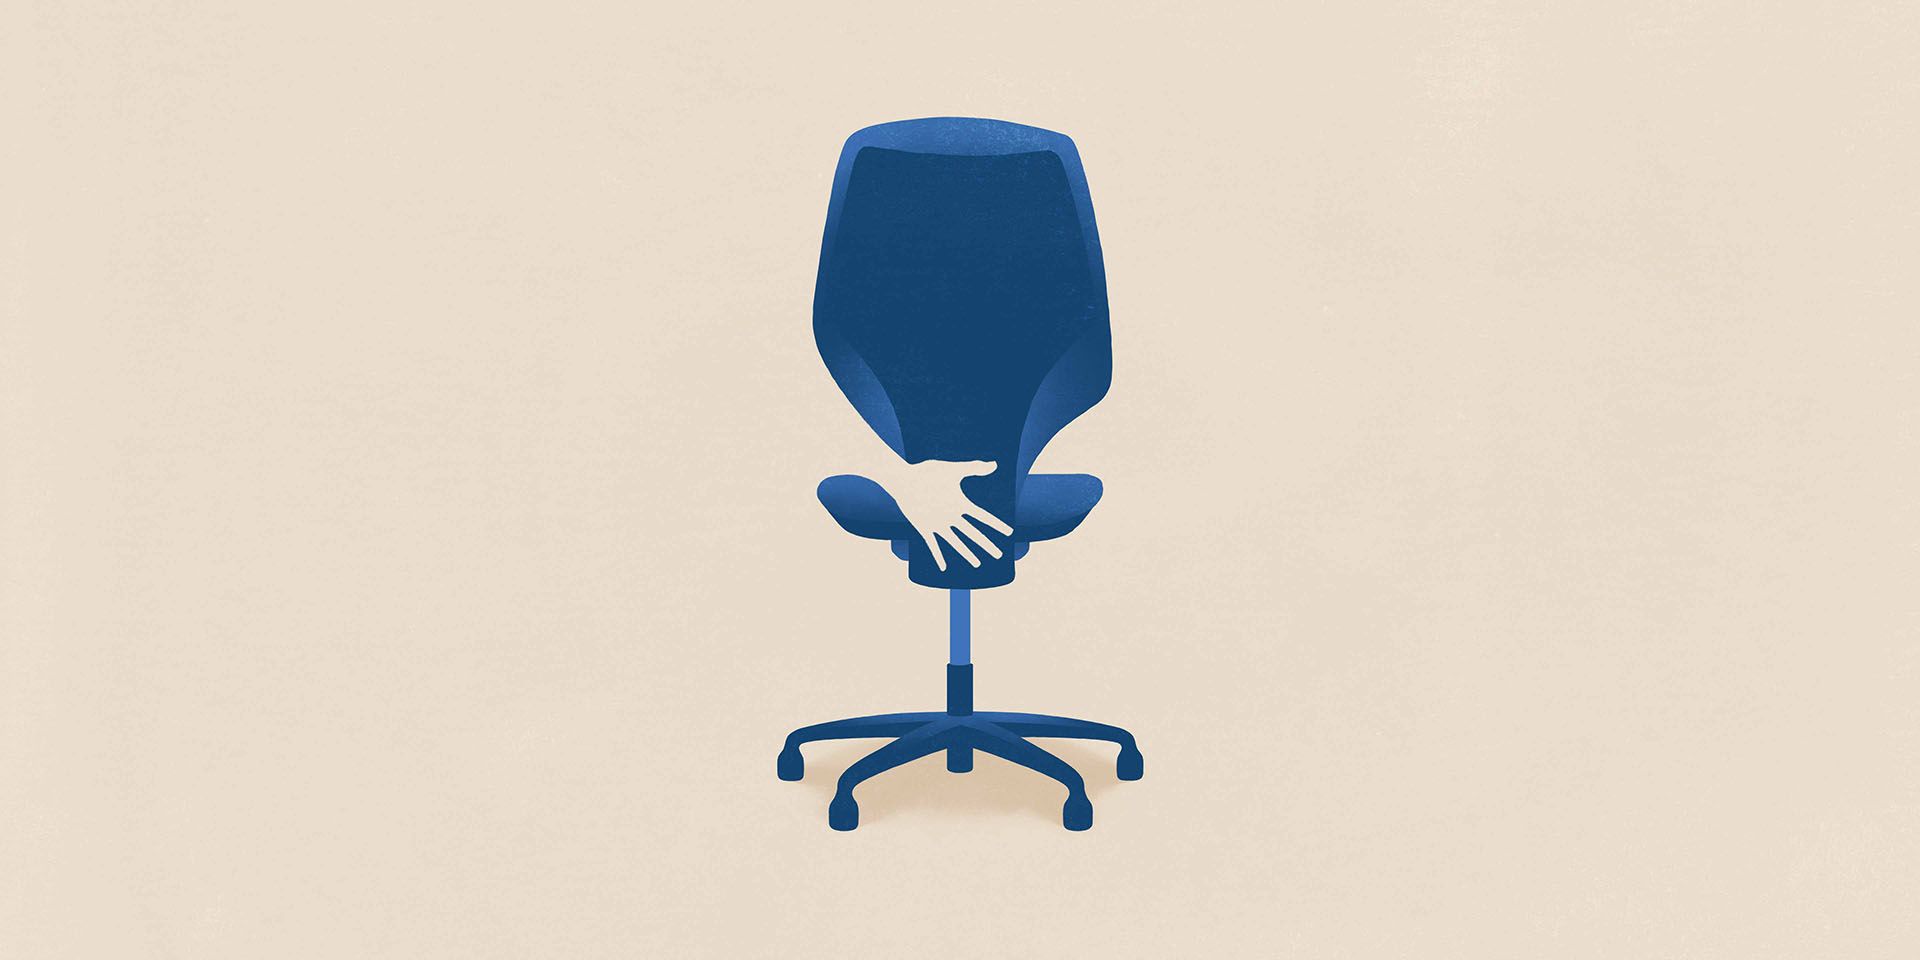 Le molestie sessuali sul posto di lavoro sono simboleggiate da una mano che tocca una sedia da ufficio.